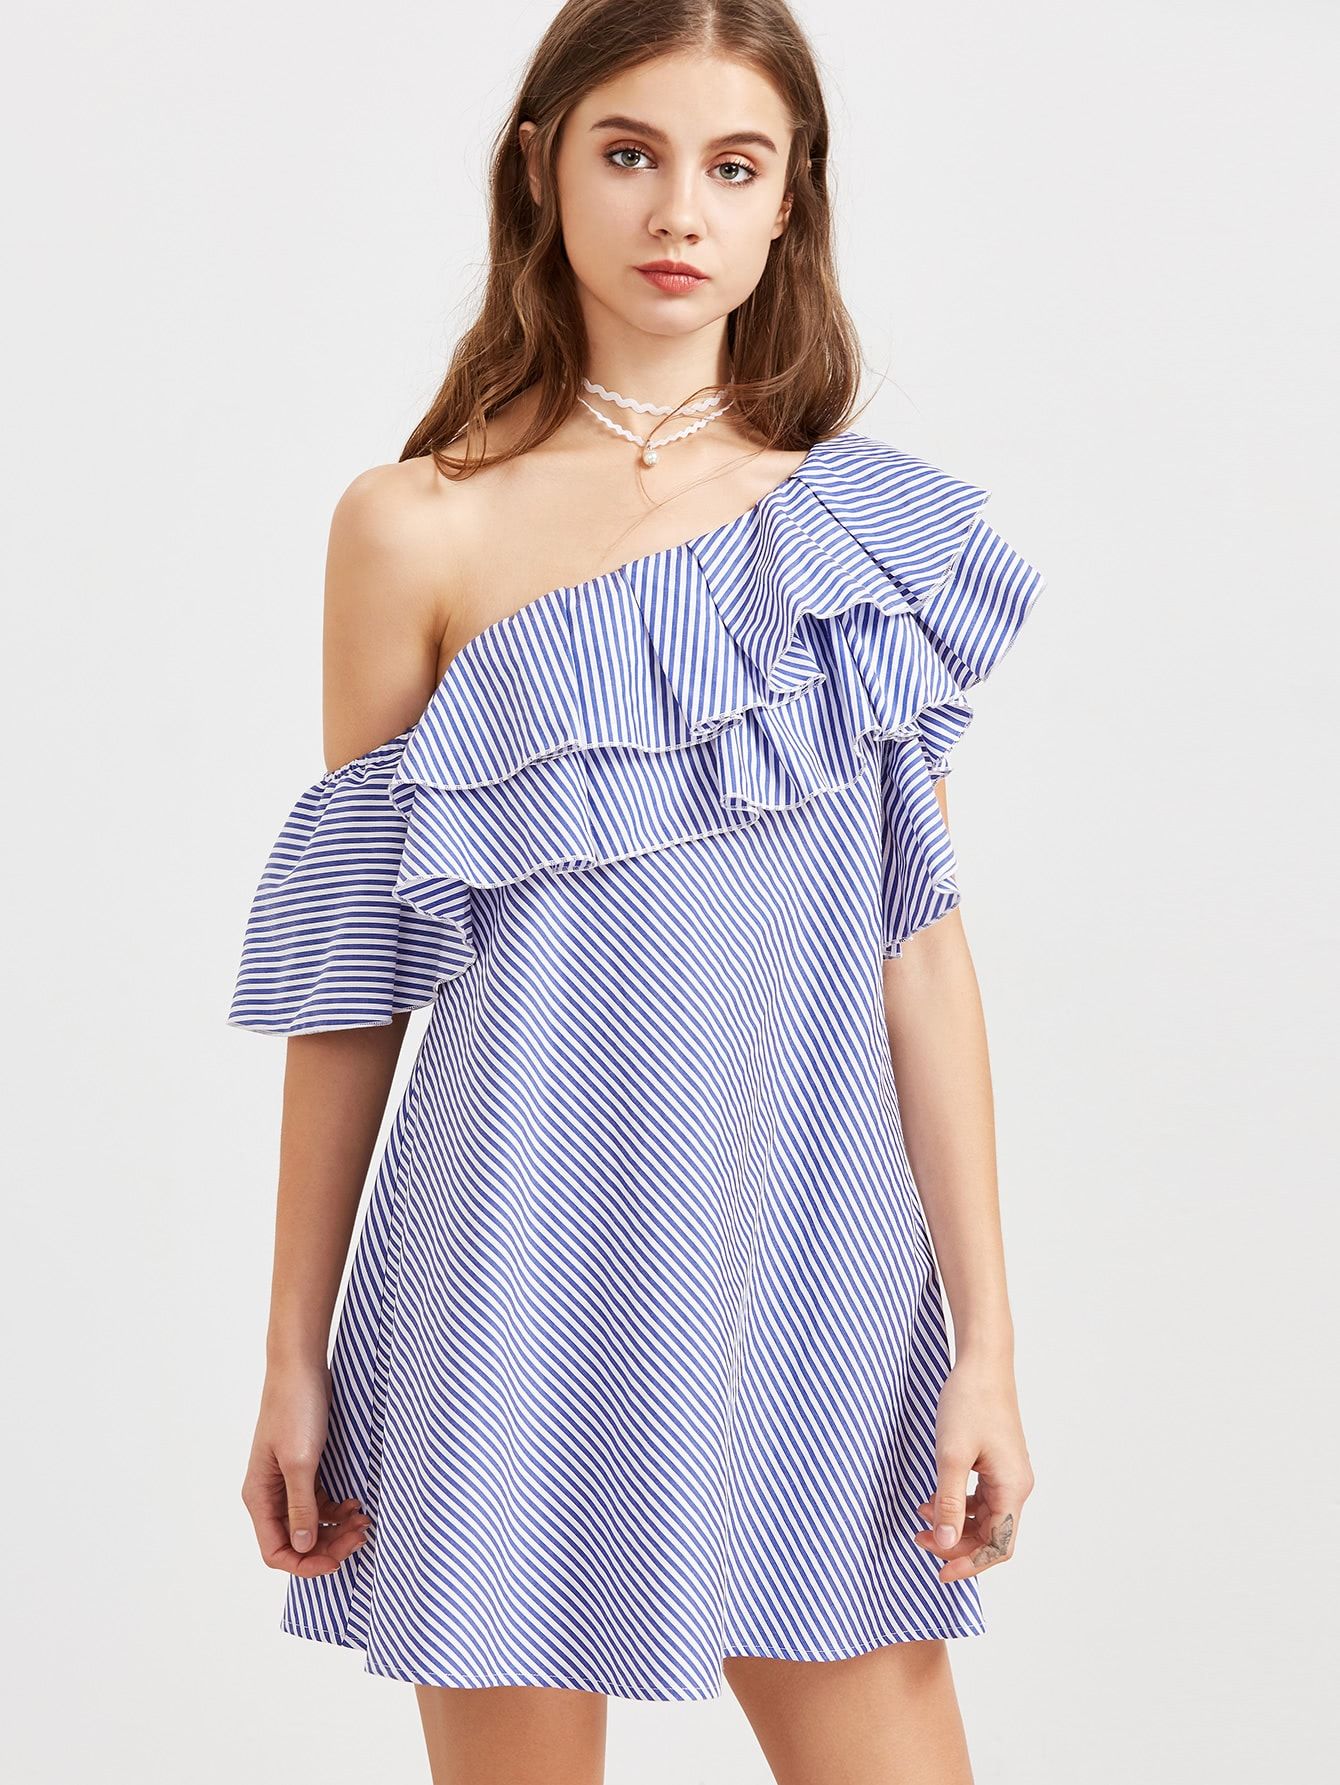 Blue Striped One Shoulder Layered Ruffle Dress | ROMWE